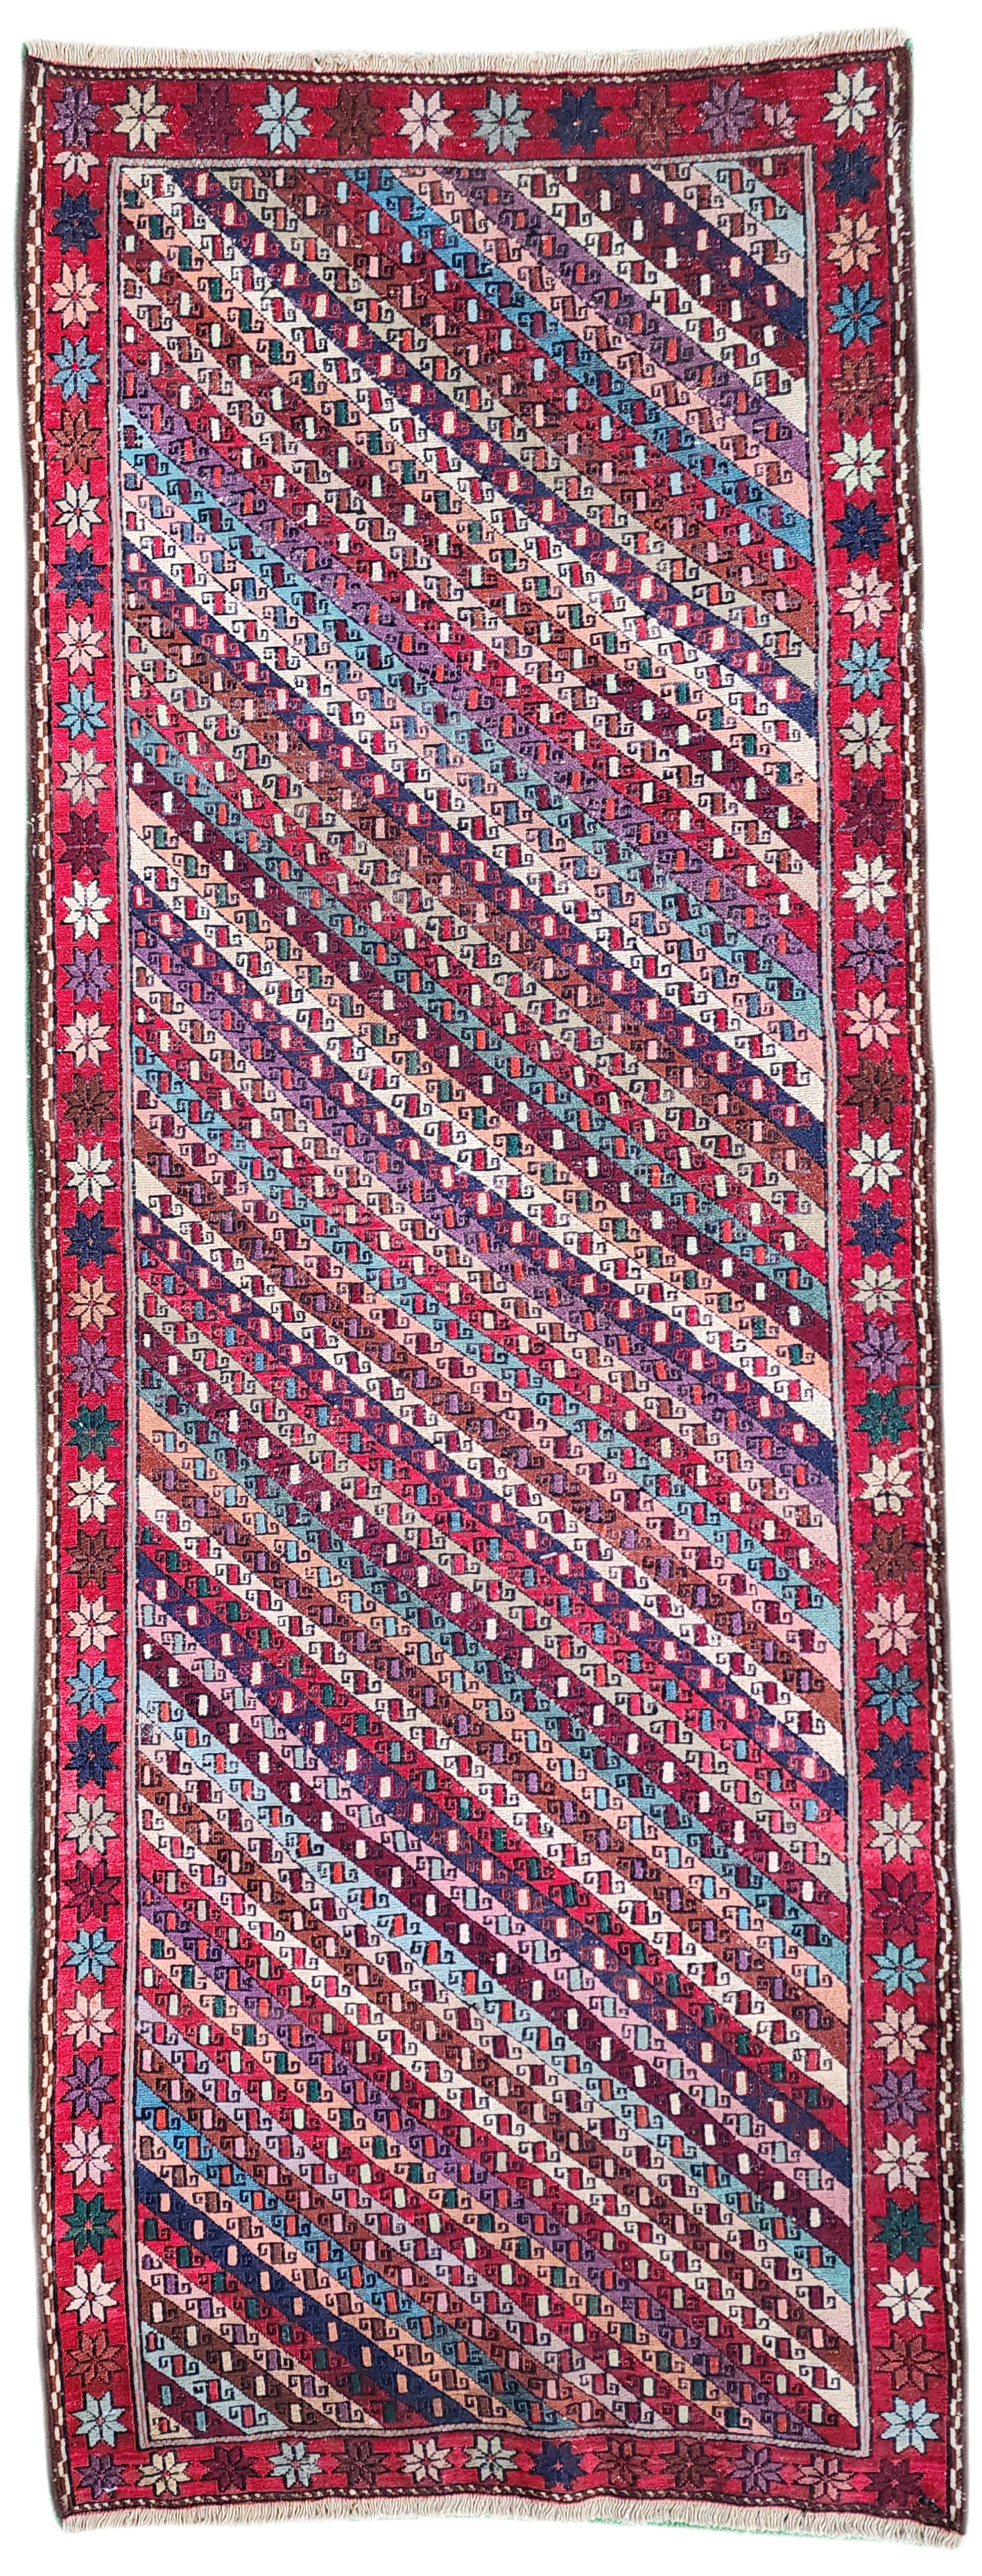 Persian Soumak Kilim Runner 6 x 2 ft Brown Red and Blue Handmade Natural Wool Boho Rustic Turkish Floor Rug